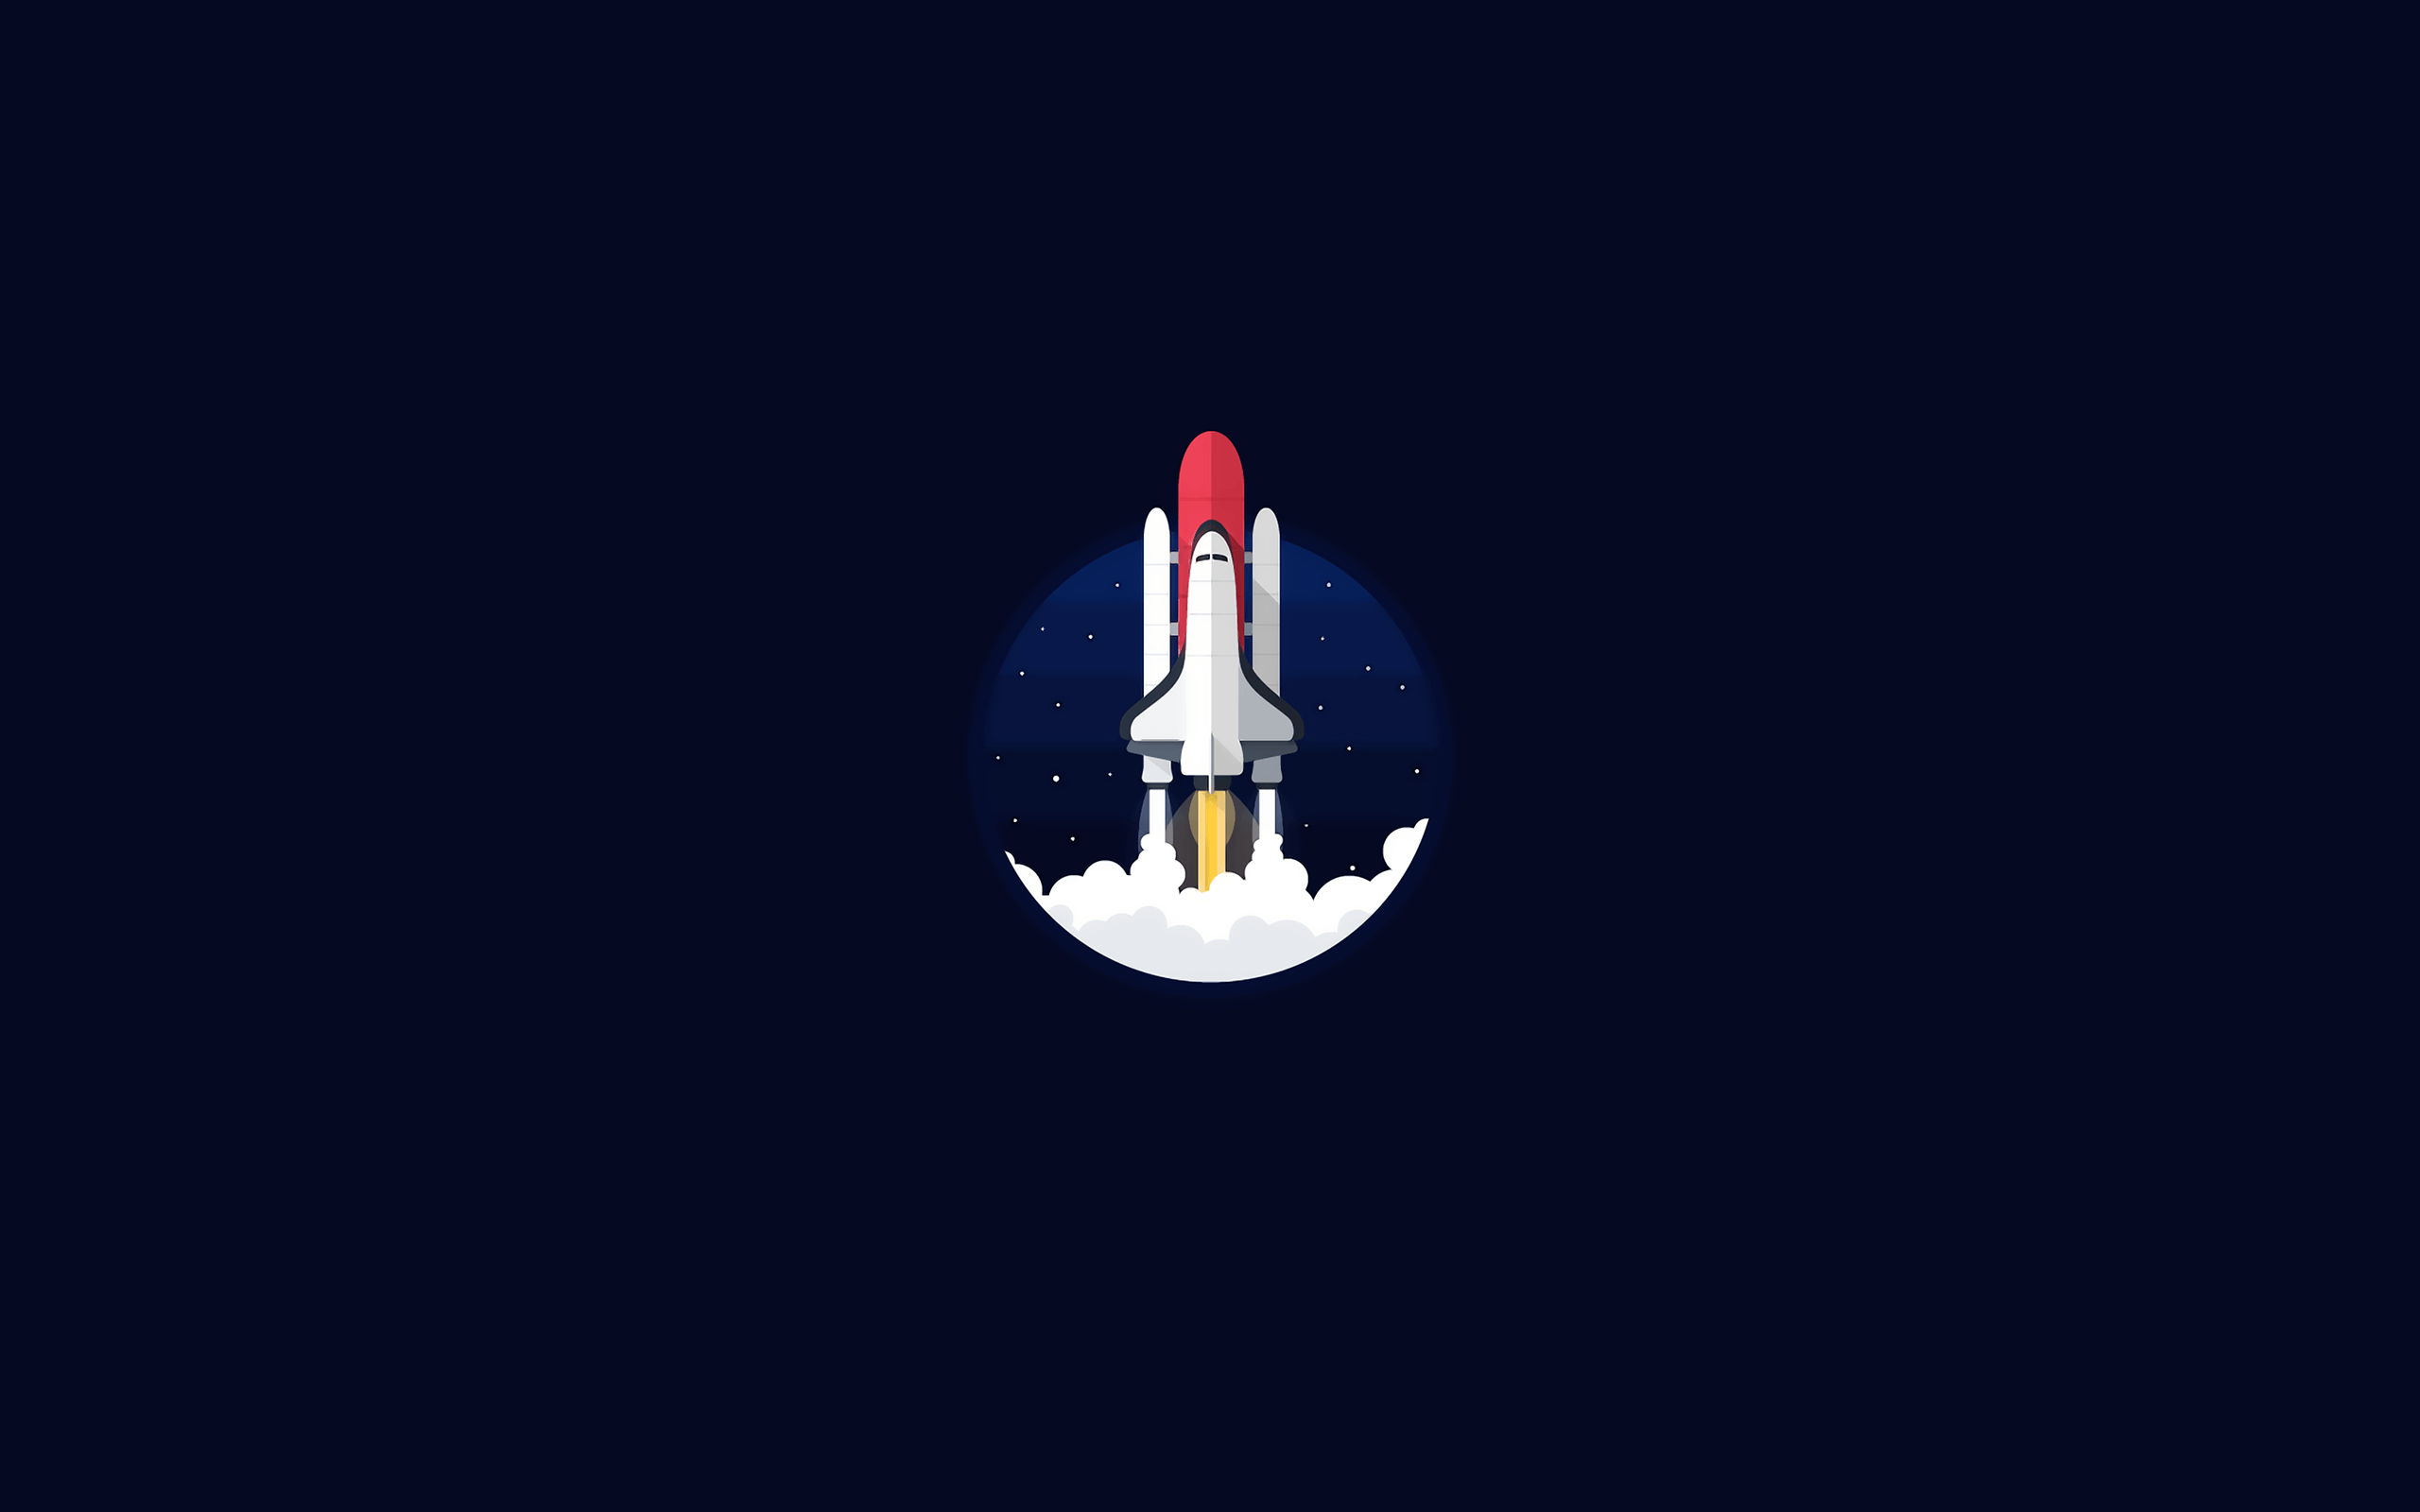 Spacecraft Logo - Wallpaper : illustration, NASA, minimalism, vehicle, logo, rocket ...